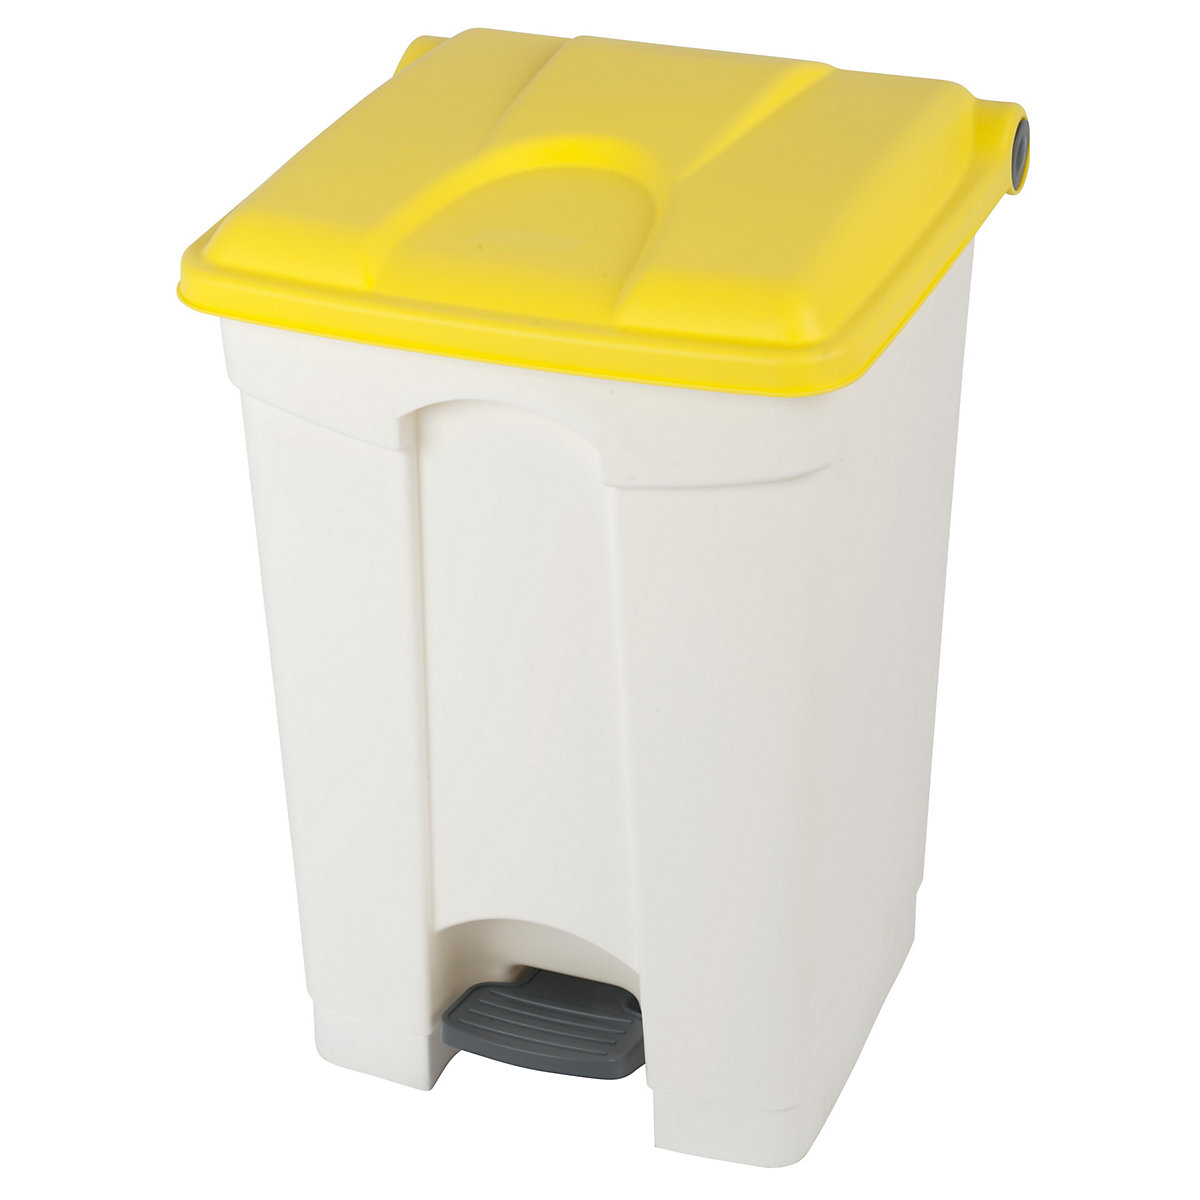 Spremnik za otpad s papučicom, volumen 45 l, ŠxVxD 410 x 600 x 400 mm, u bijeloj boji, poklopac u žutoj boji-18